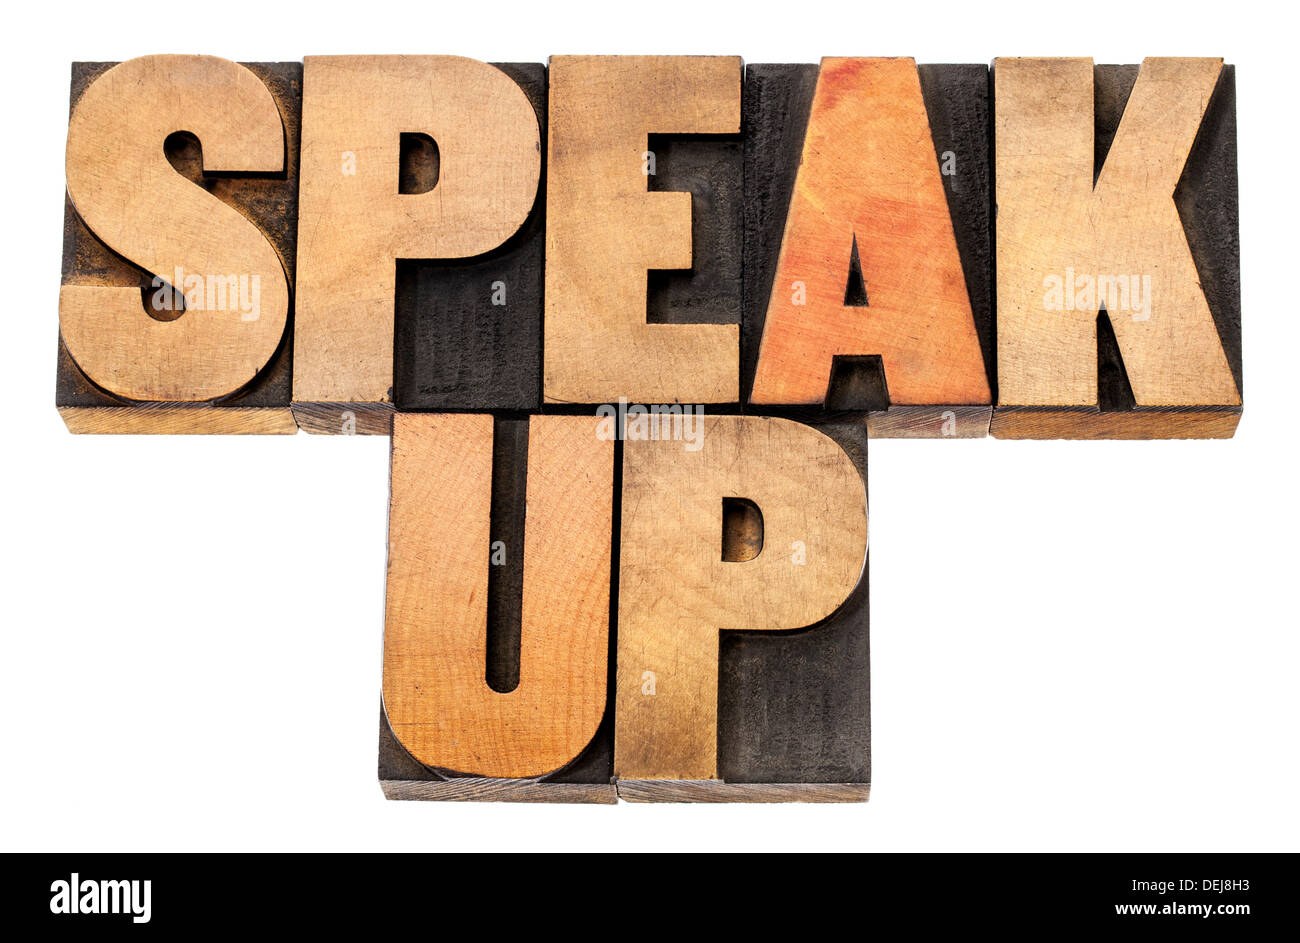 Speak up - motivazione concetto - testo isolato in rilievografia tipo legno Foto Stock